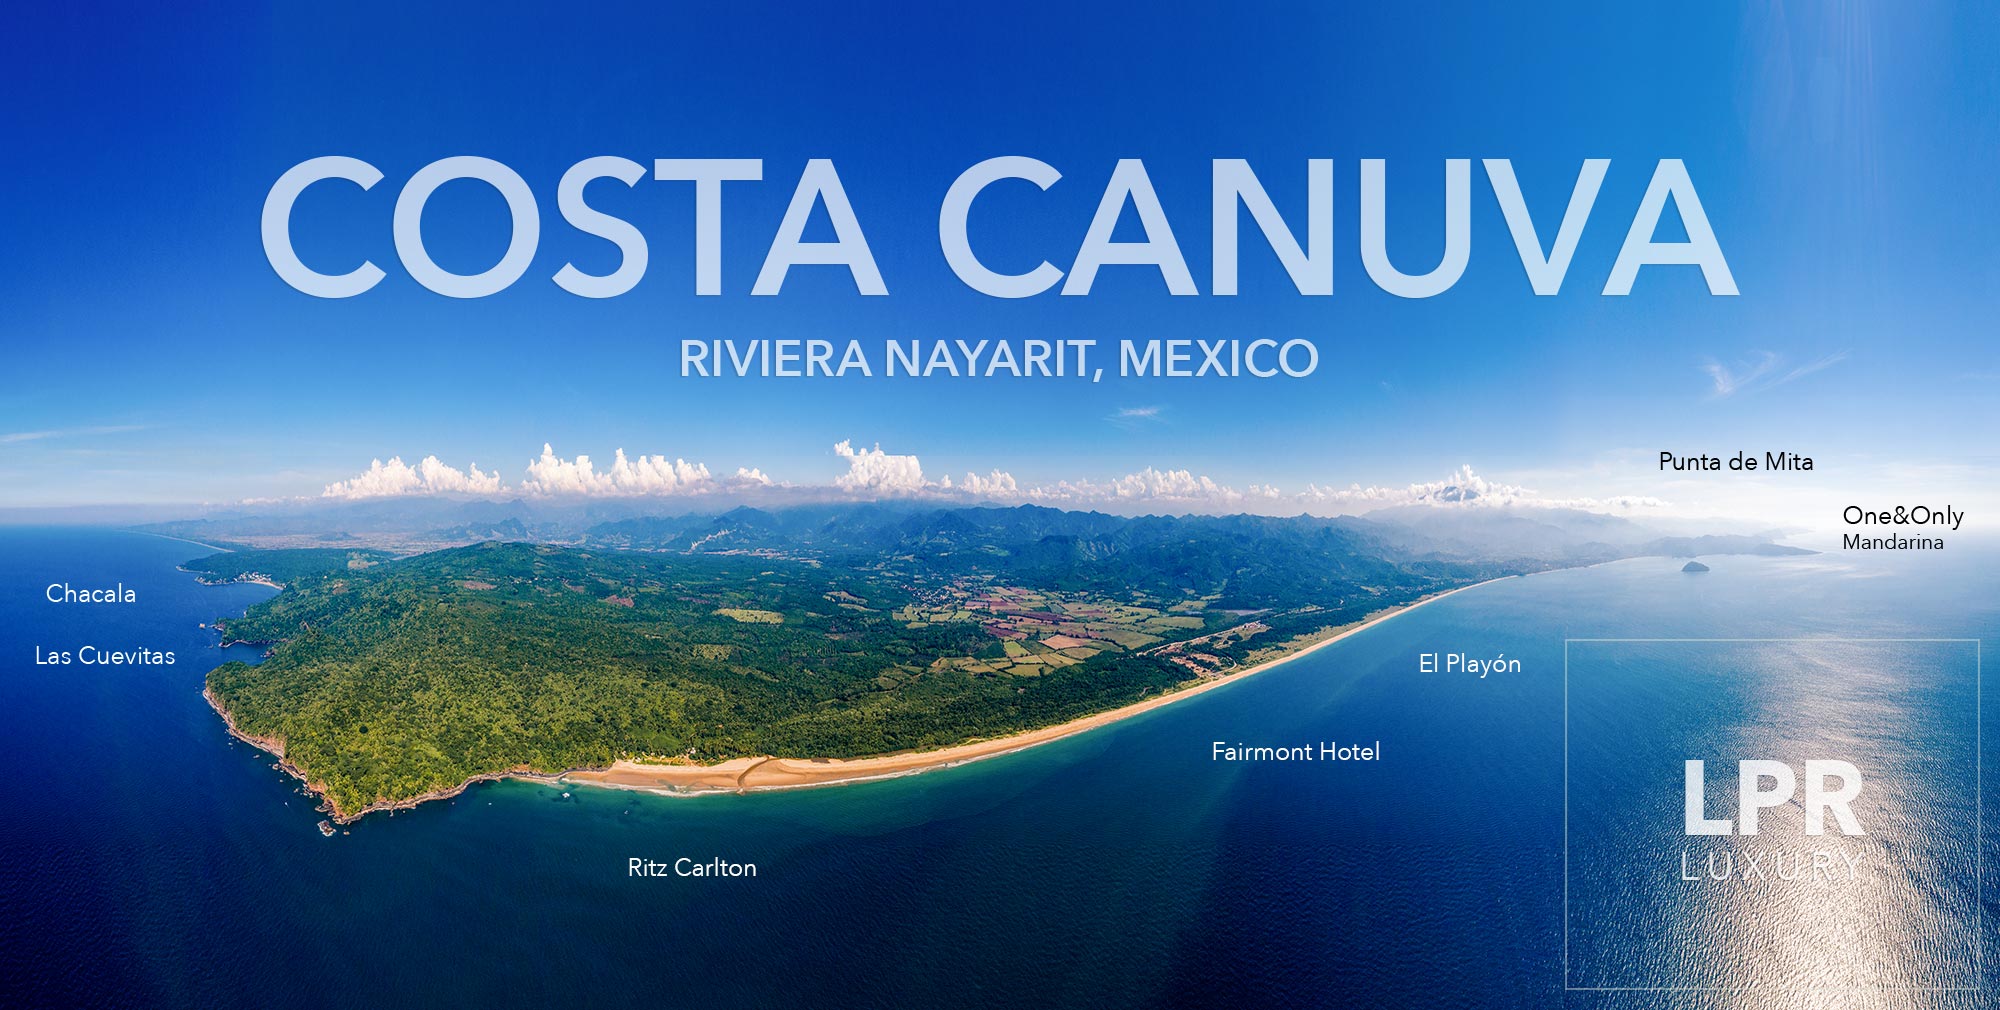 Costa Canuva, Riviera Nayarit, Mexico